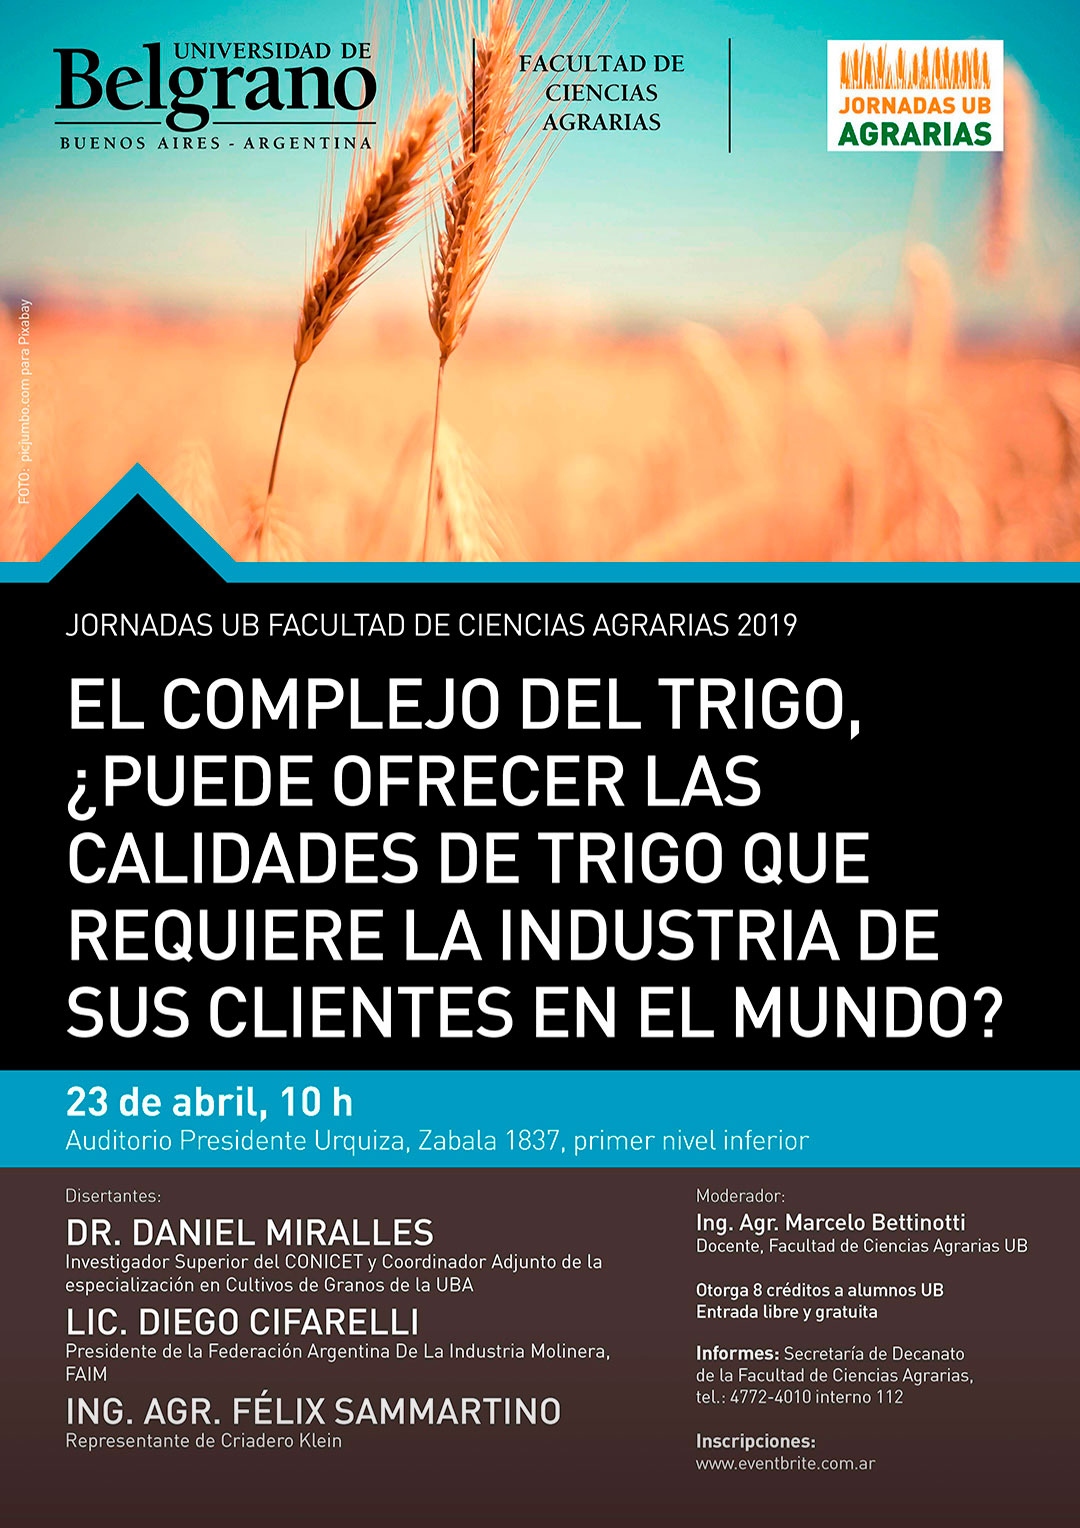 Universidad de Belgrano | Ciencias Agrarias | El Complejo del Trigo, ¿Puede ofrecer la calidades de trigo que requiere la industria de sus clientes en el mundo?